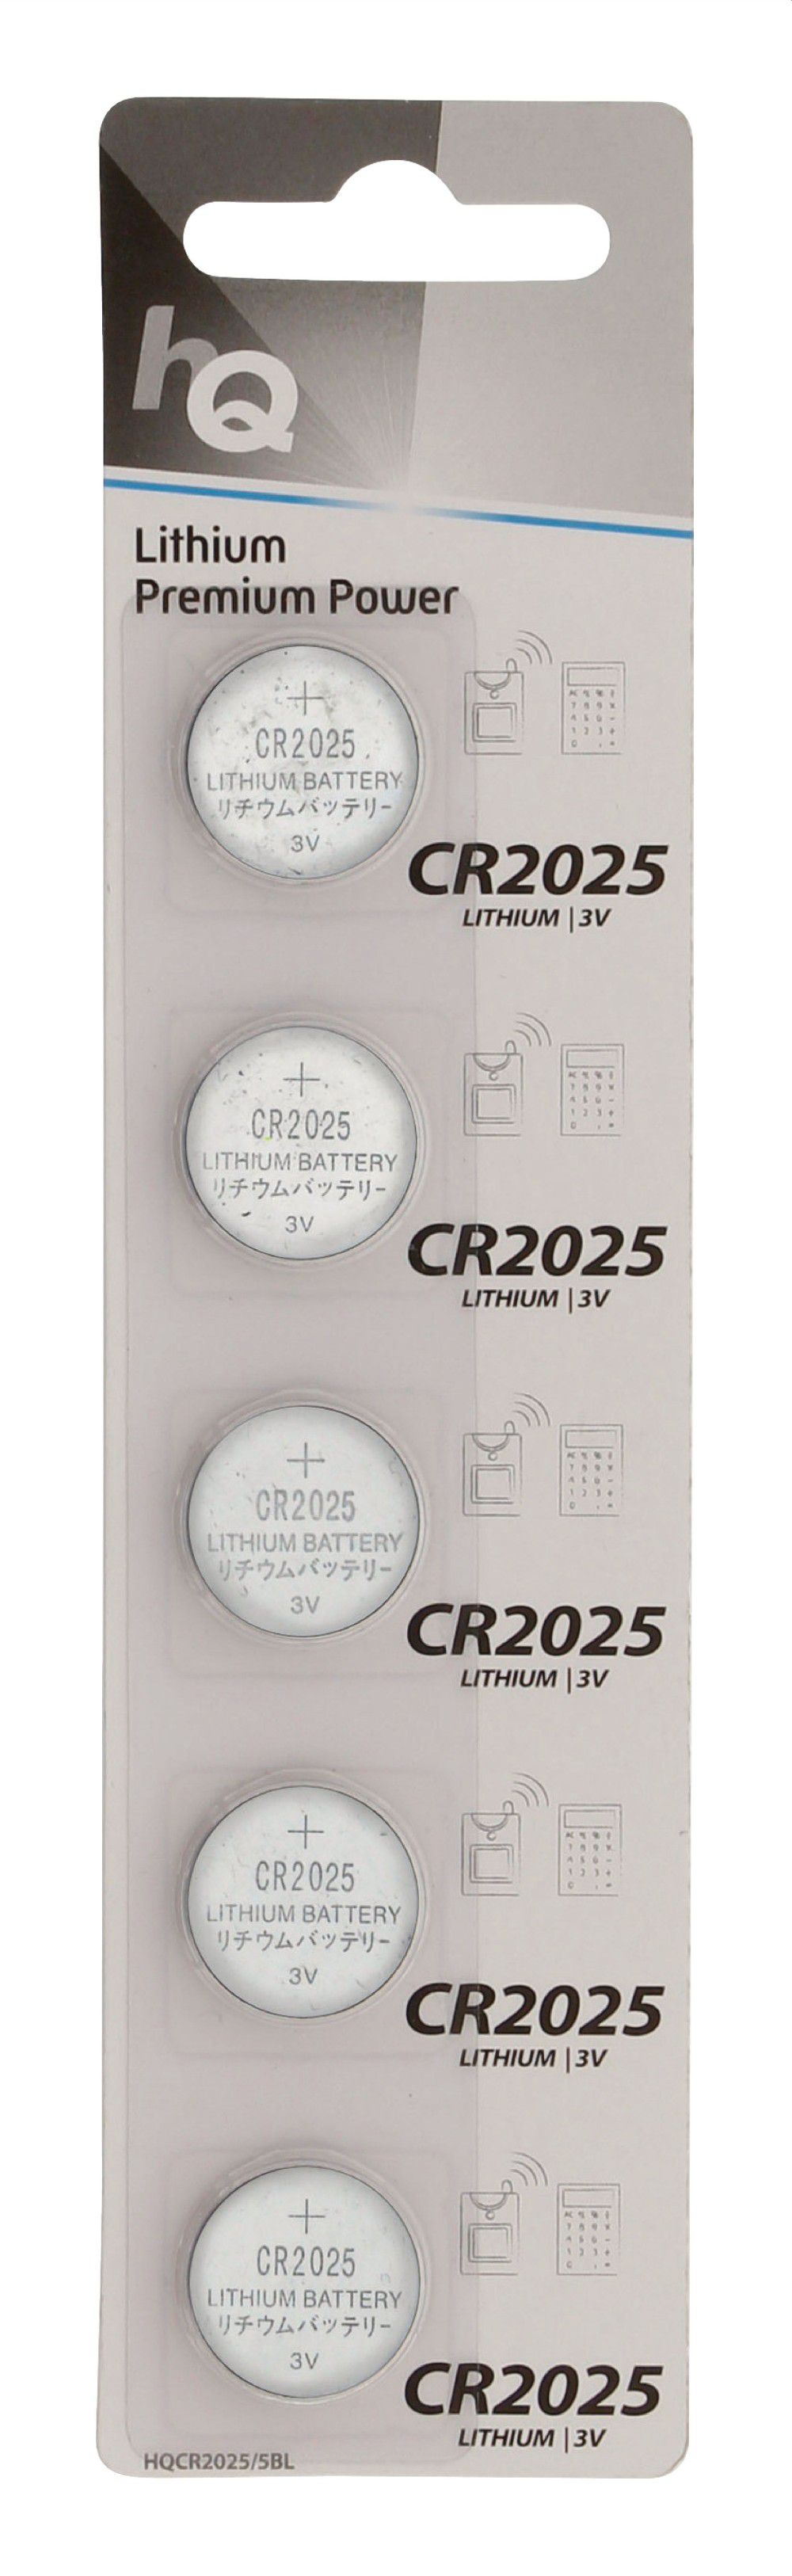 Elem CR-2025 HQ - Már nem forgalmazott termék fotó, illusztráció : HQ-CR2025